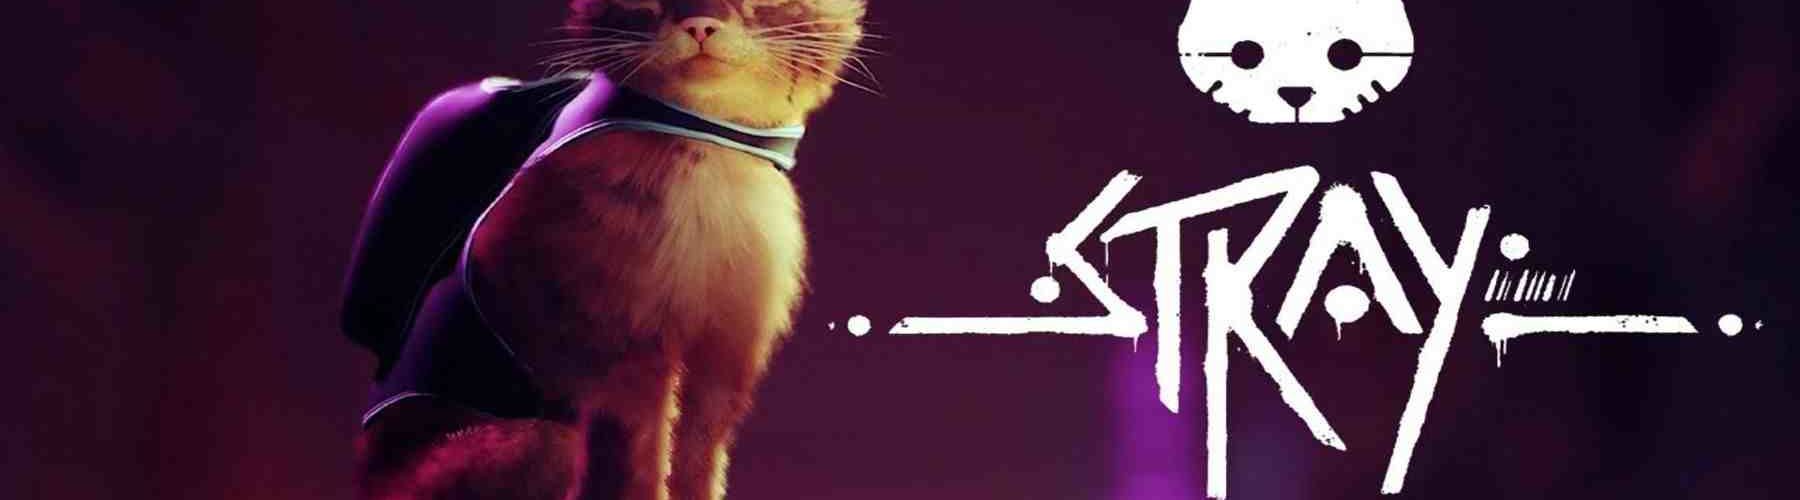 PS5 Cat Game Stray pourrait bientôt obtenir des informations sur la date de sortie